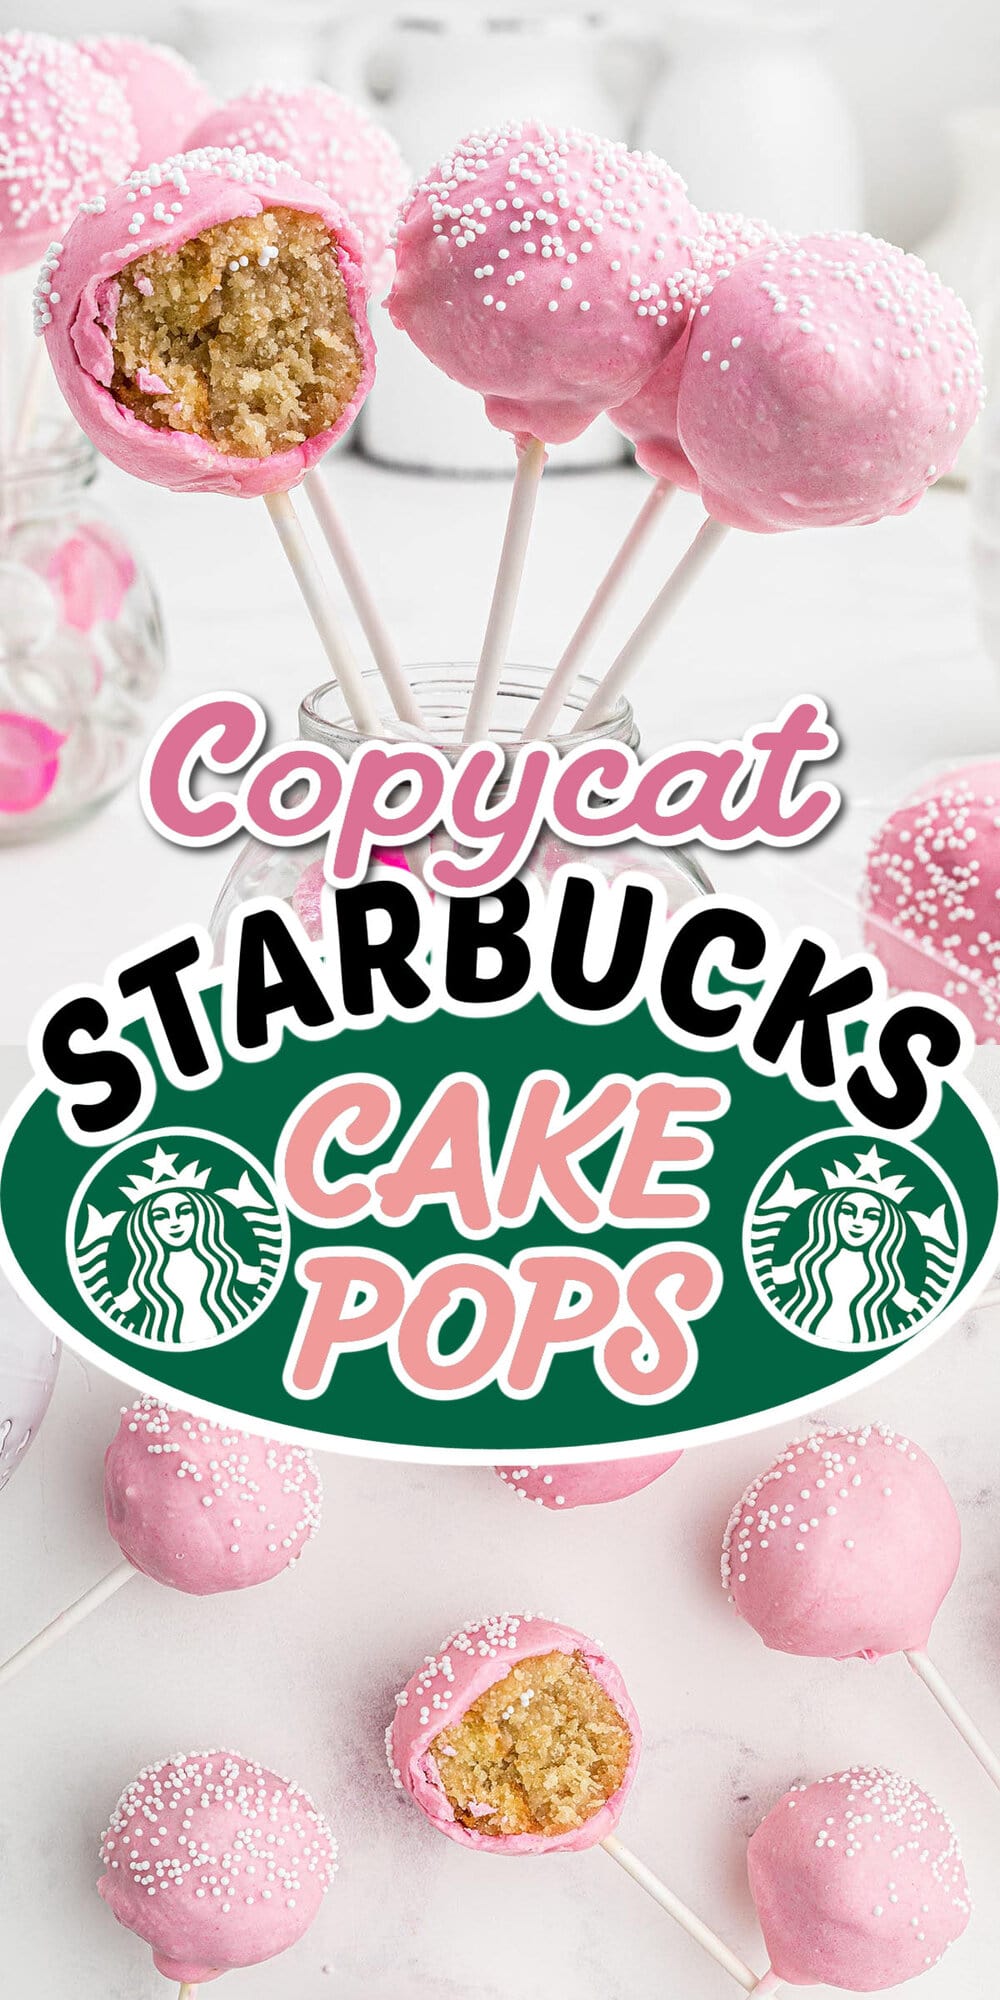 copycat Starbucks Cake Pops pinterest